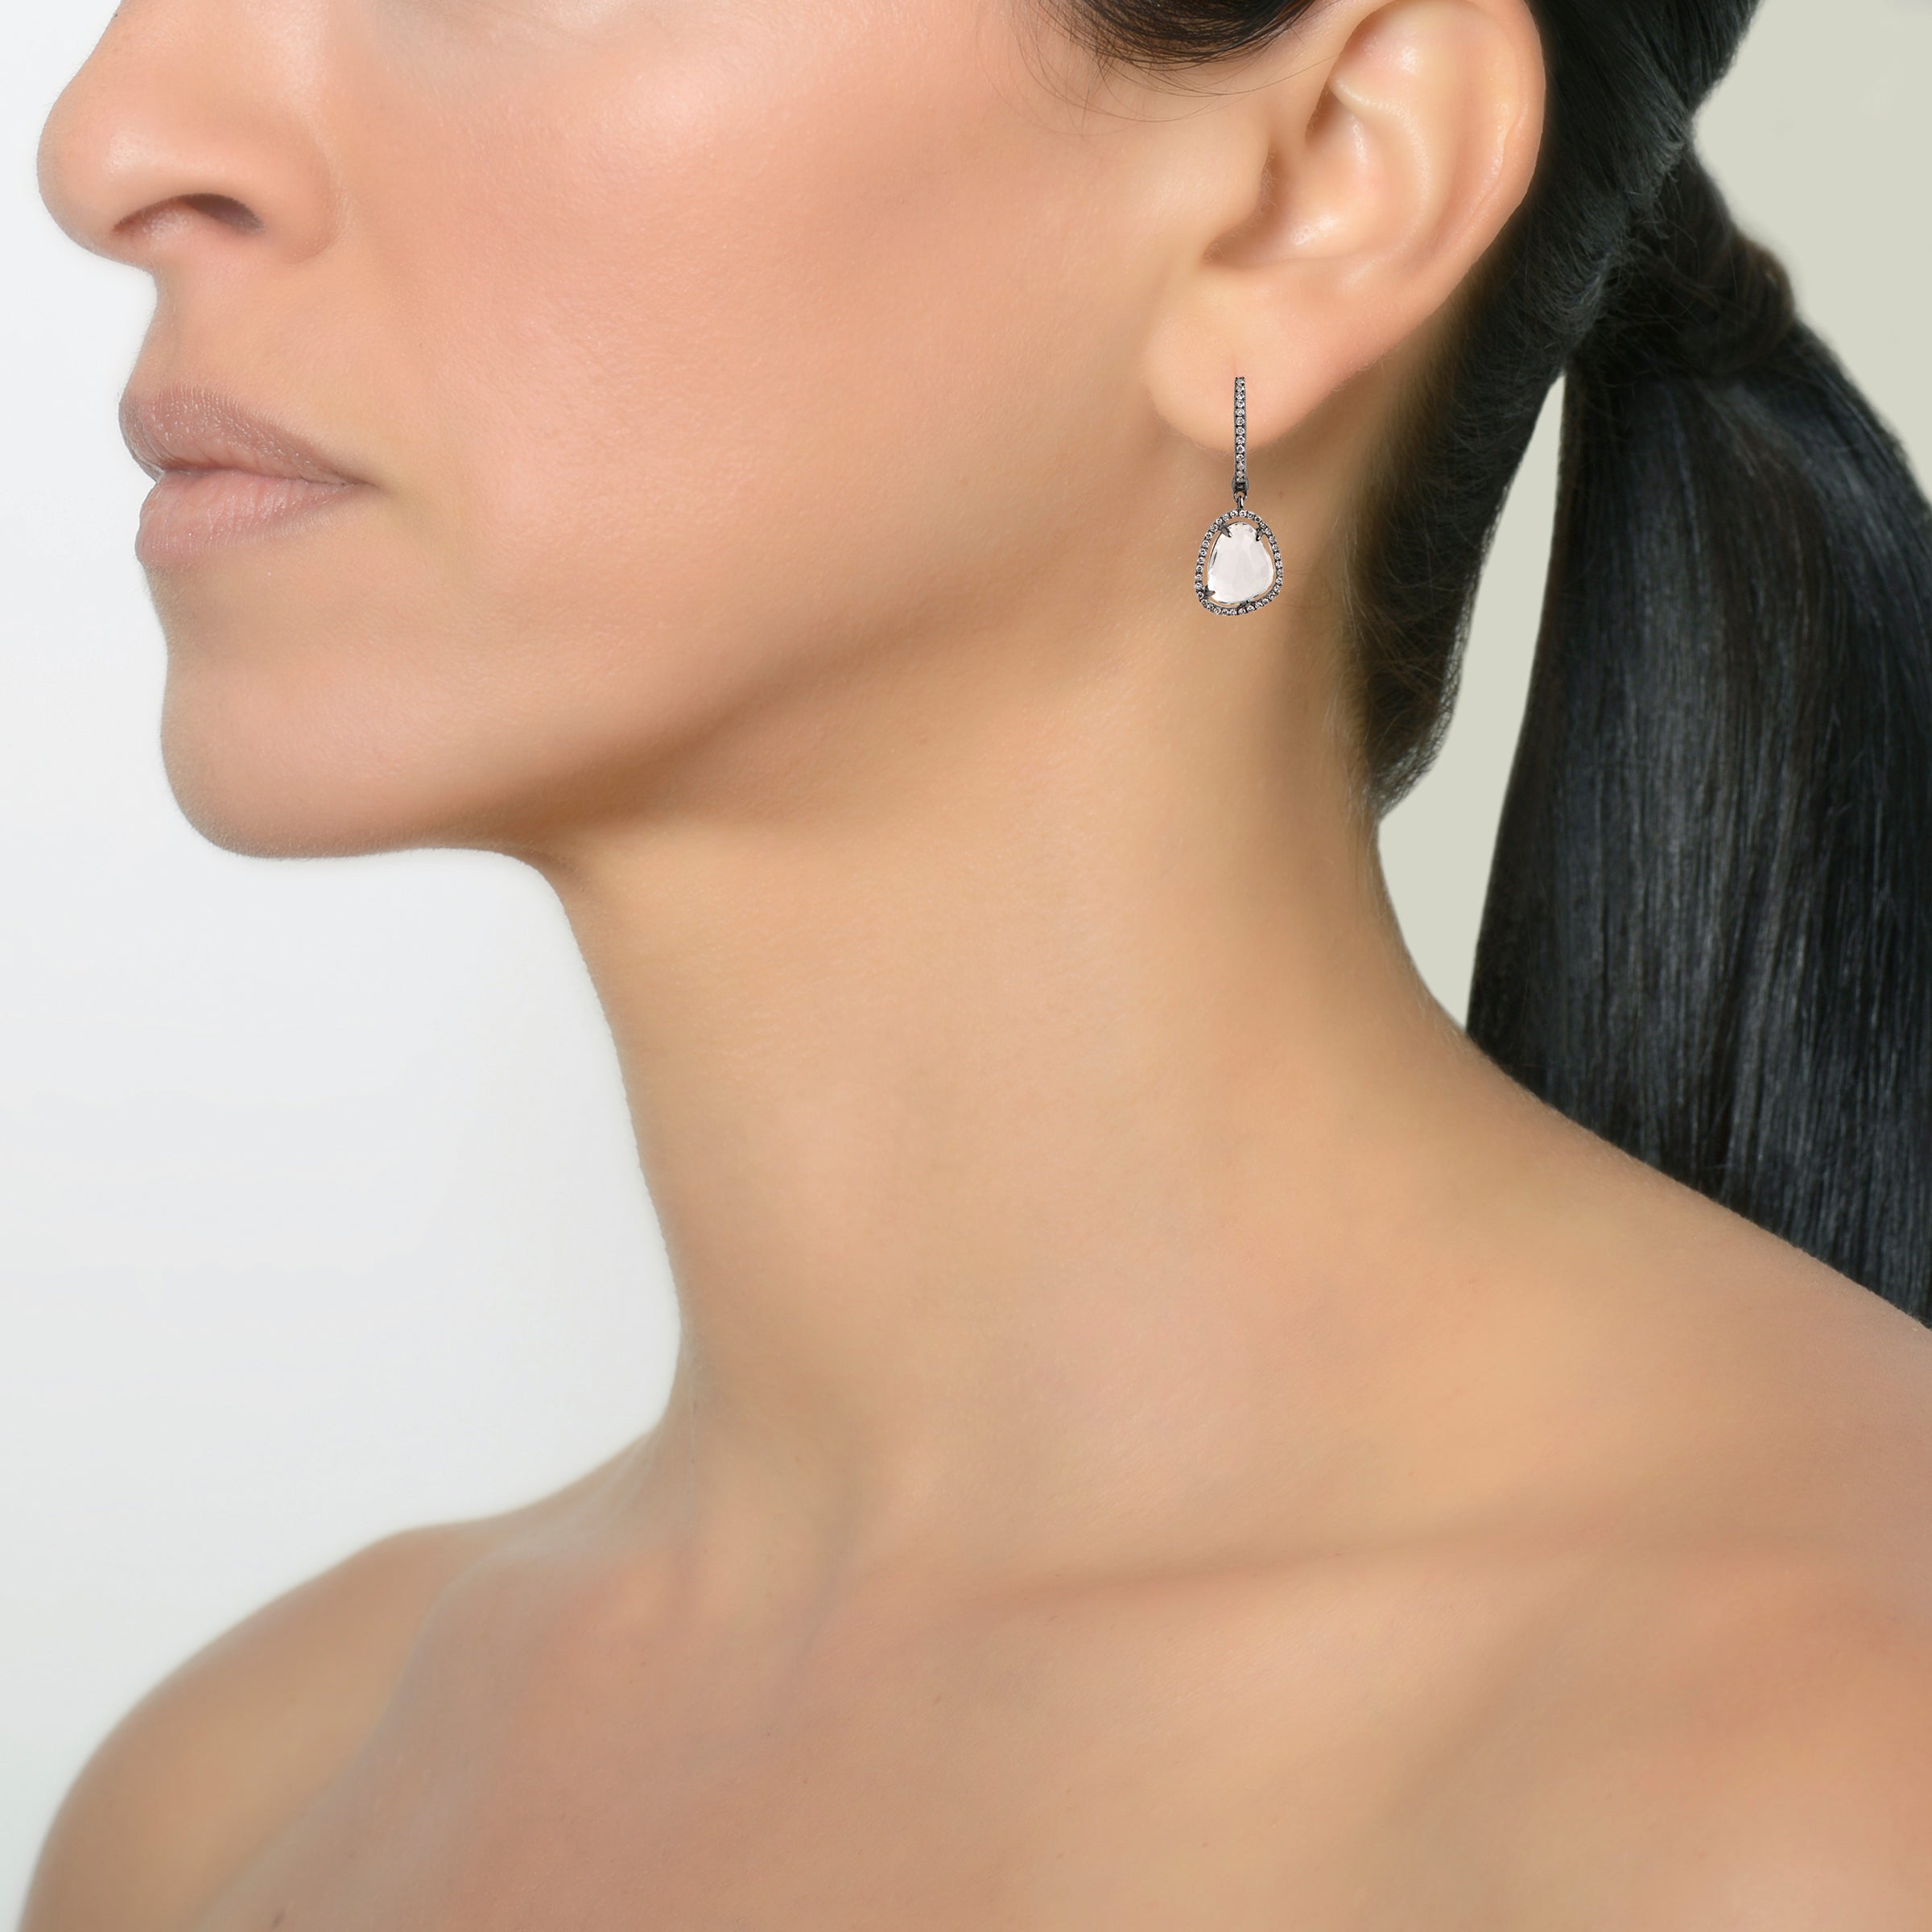 WHITE TOPAZ w/ DIAMOND DROP EARRINGS - Bridget King Jewelry